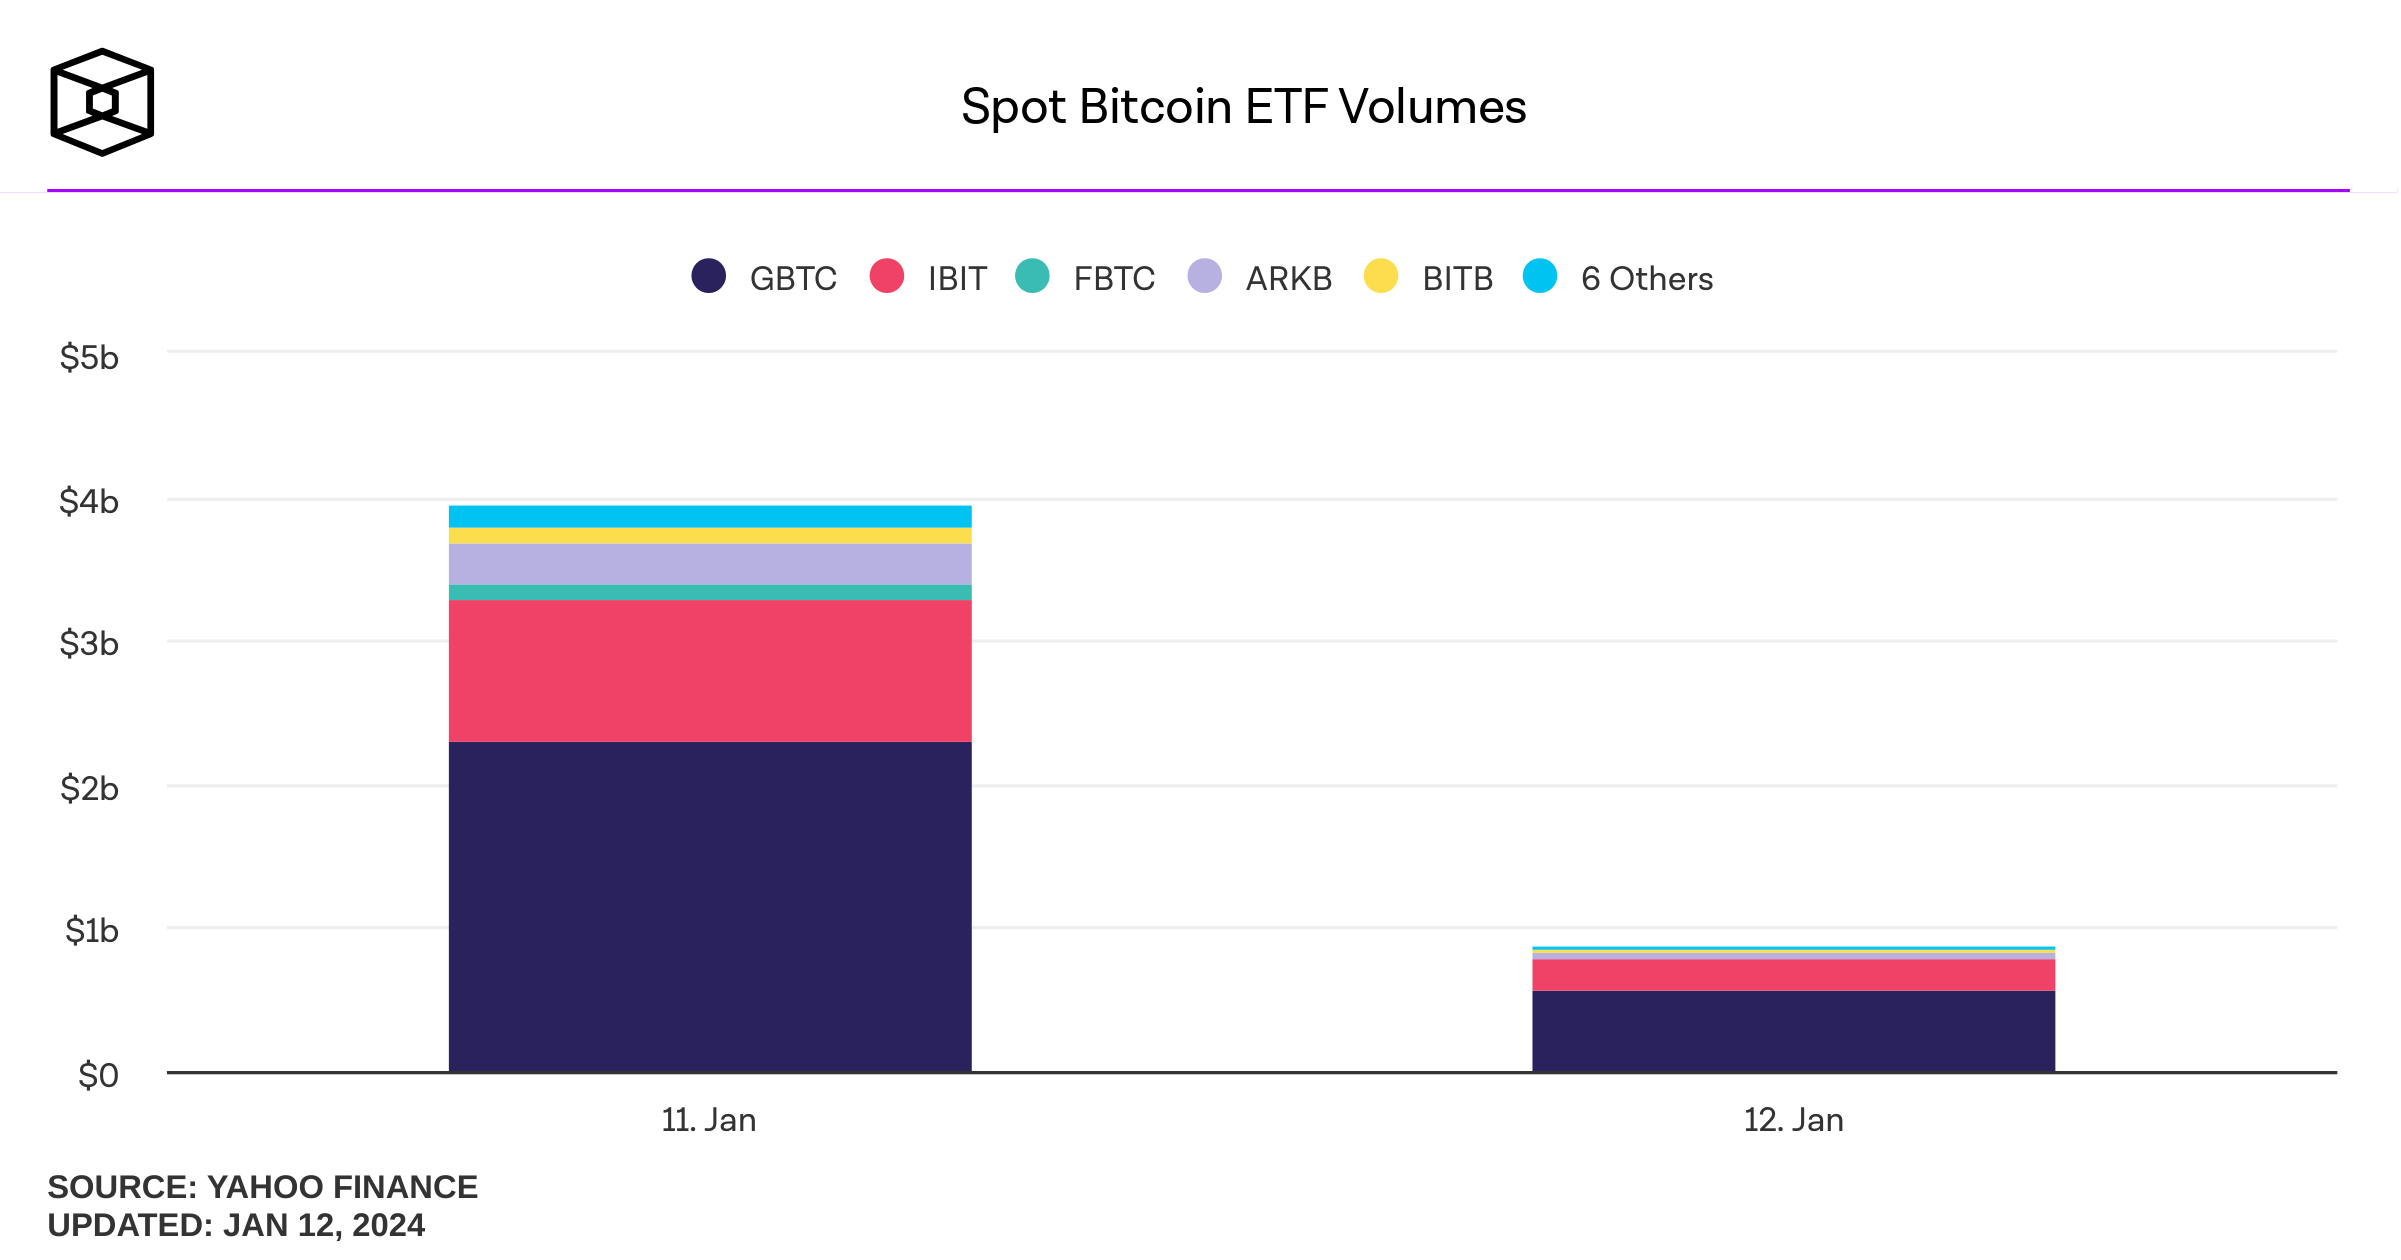 Bitcoin ETF trade volume